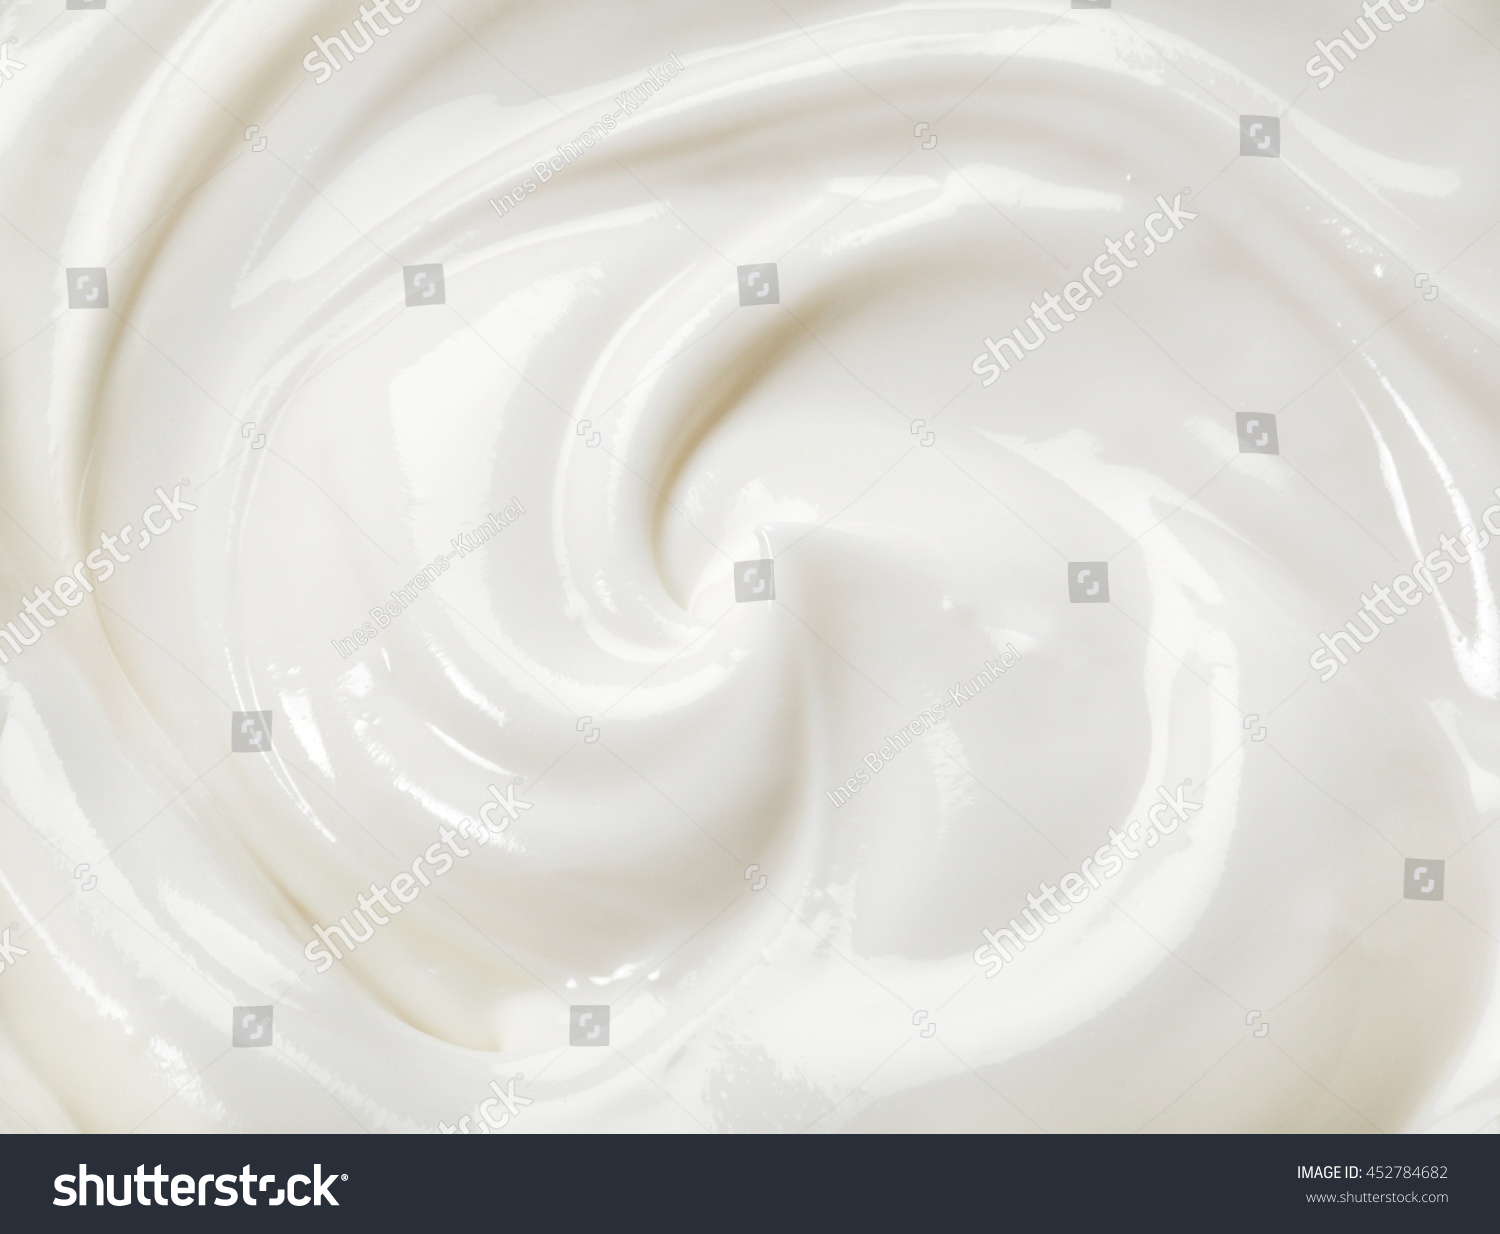 swirled yogurt #452784682